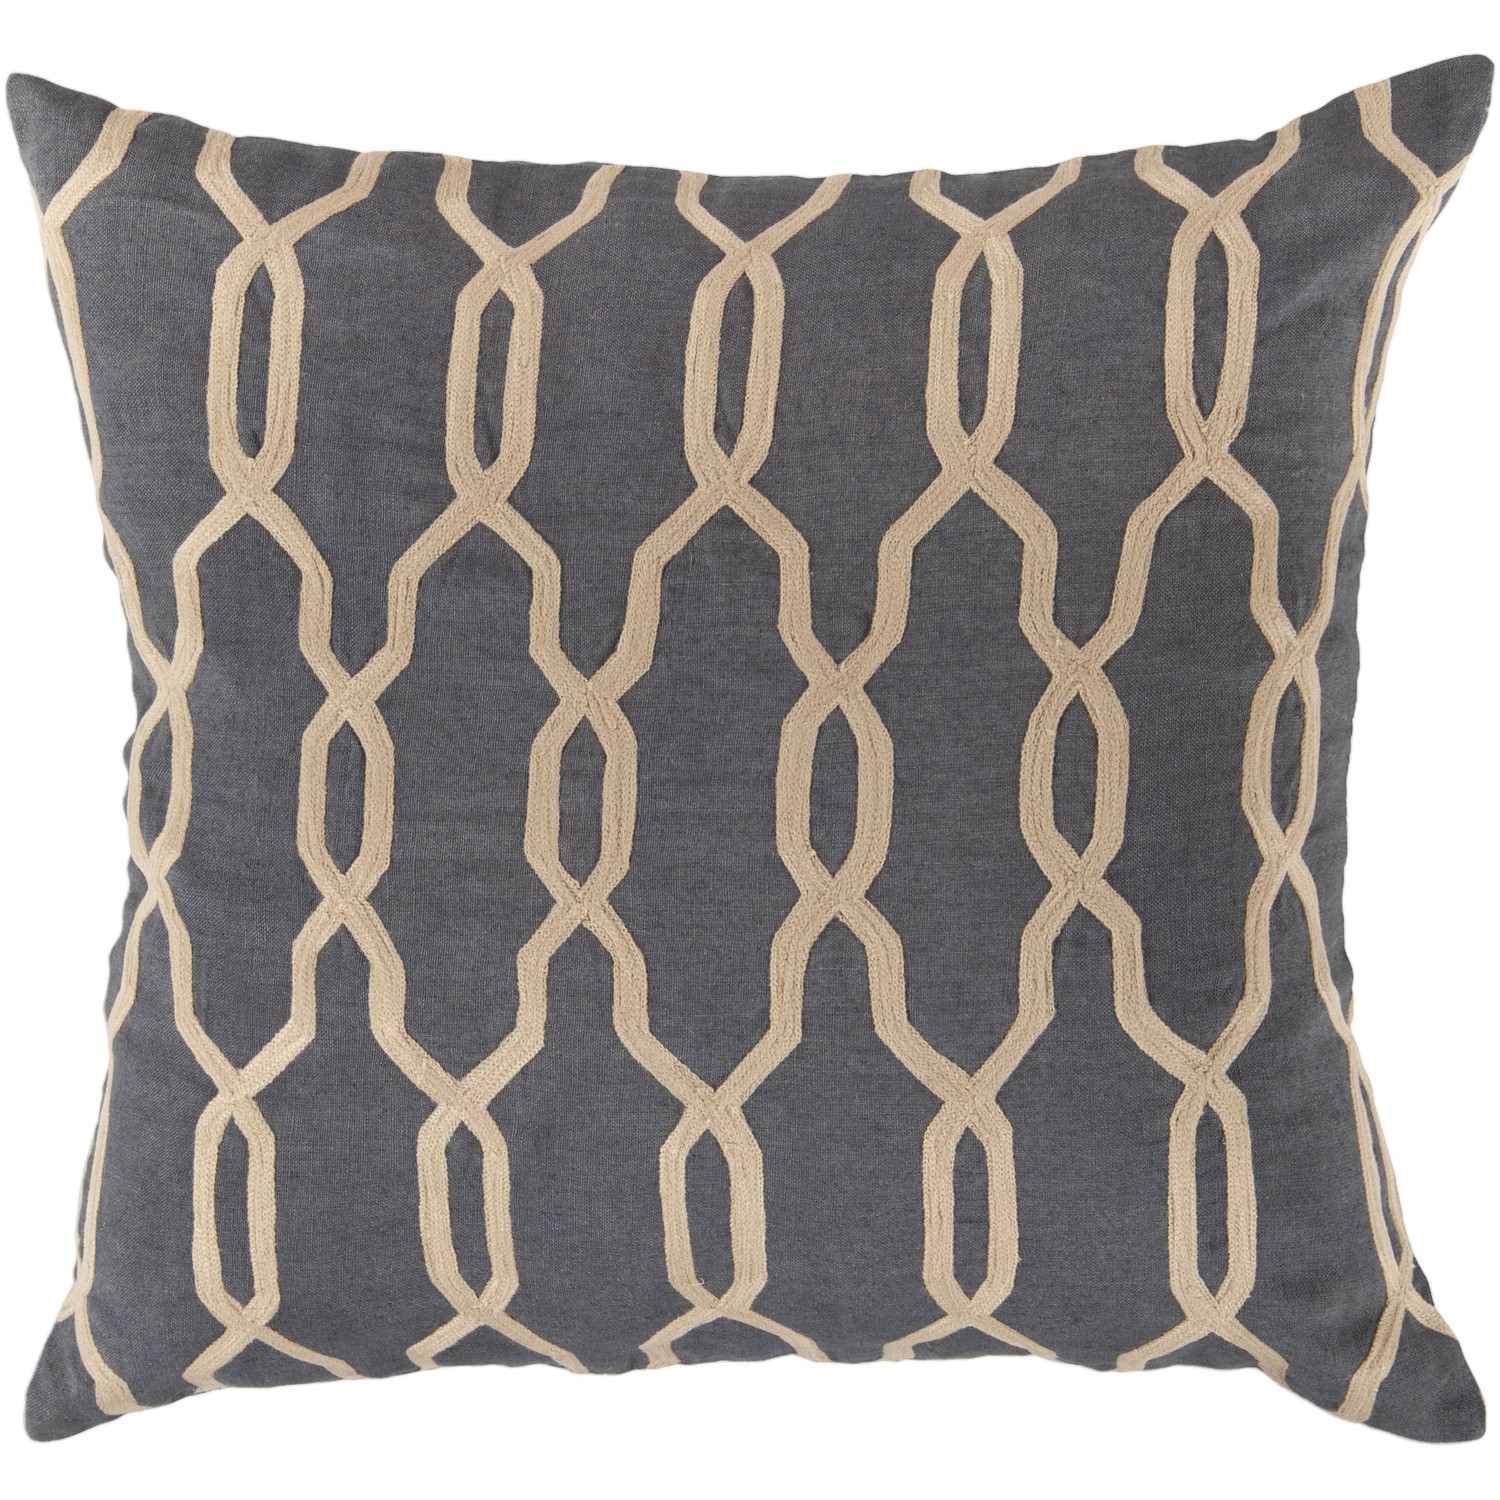 Glamorous Geometric Linen Throw Pillow - Image 0